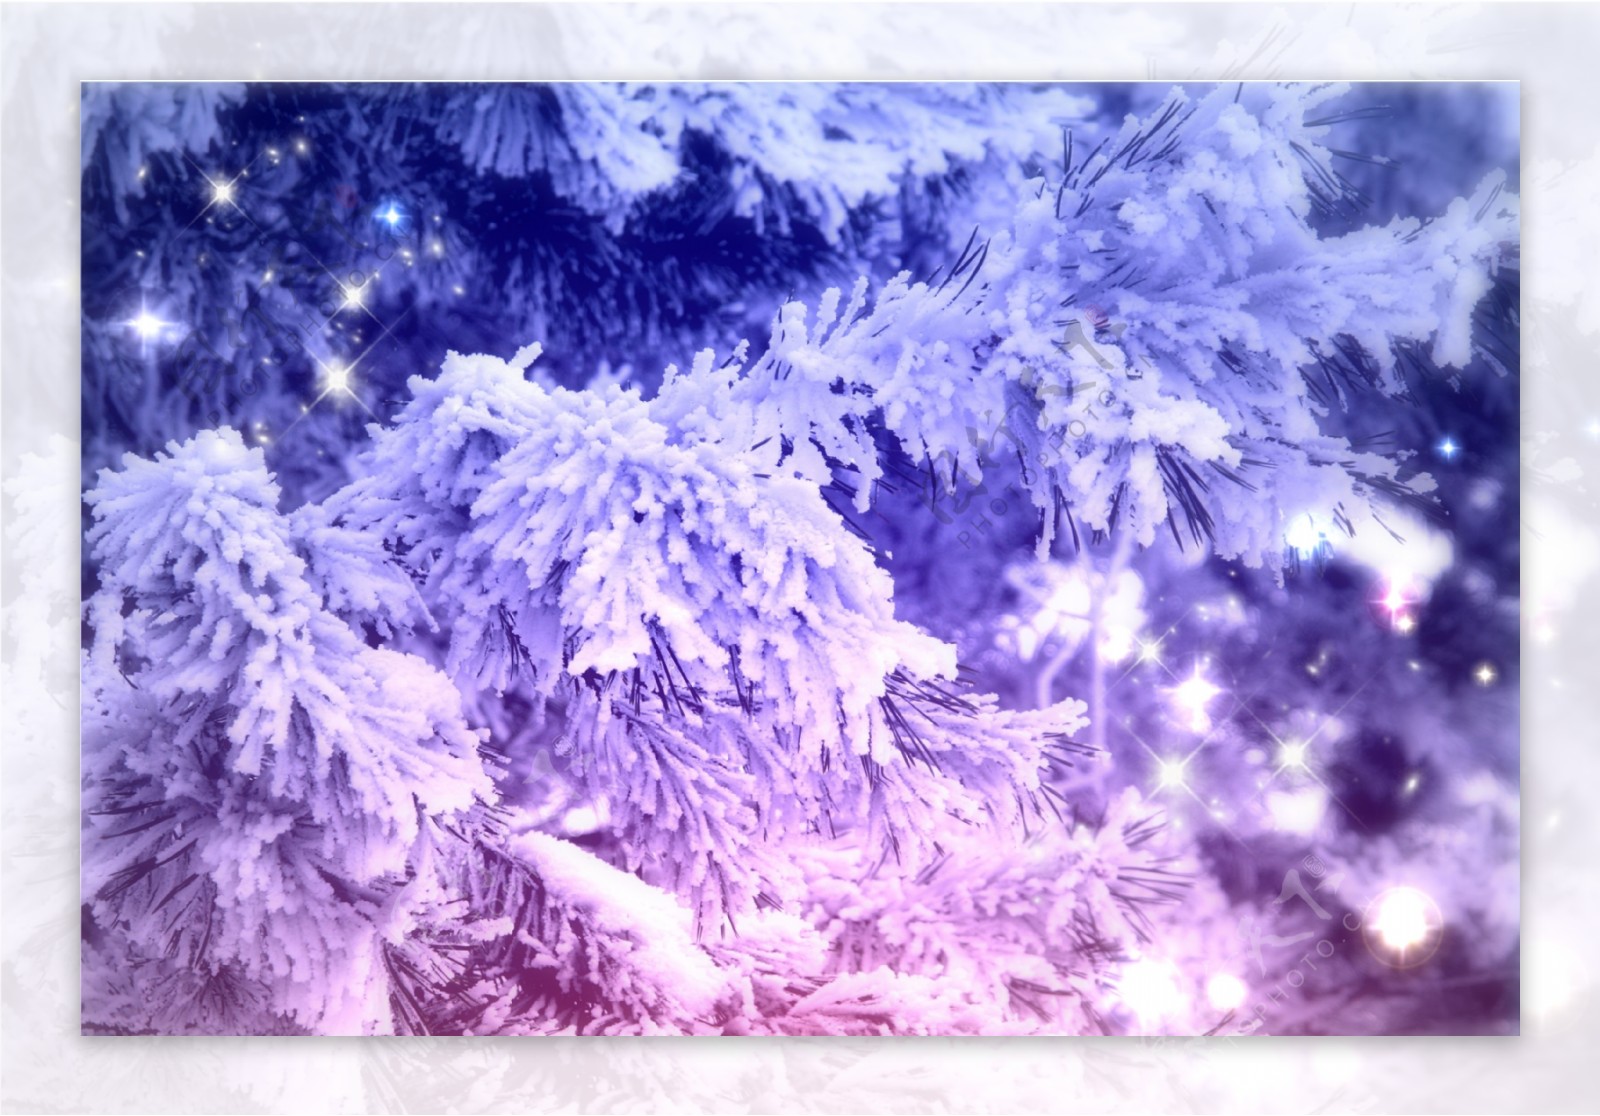 树枝上的积雪图片